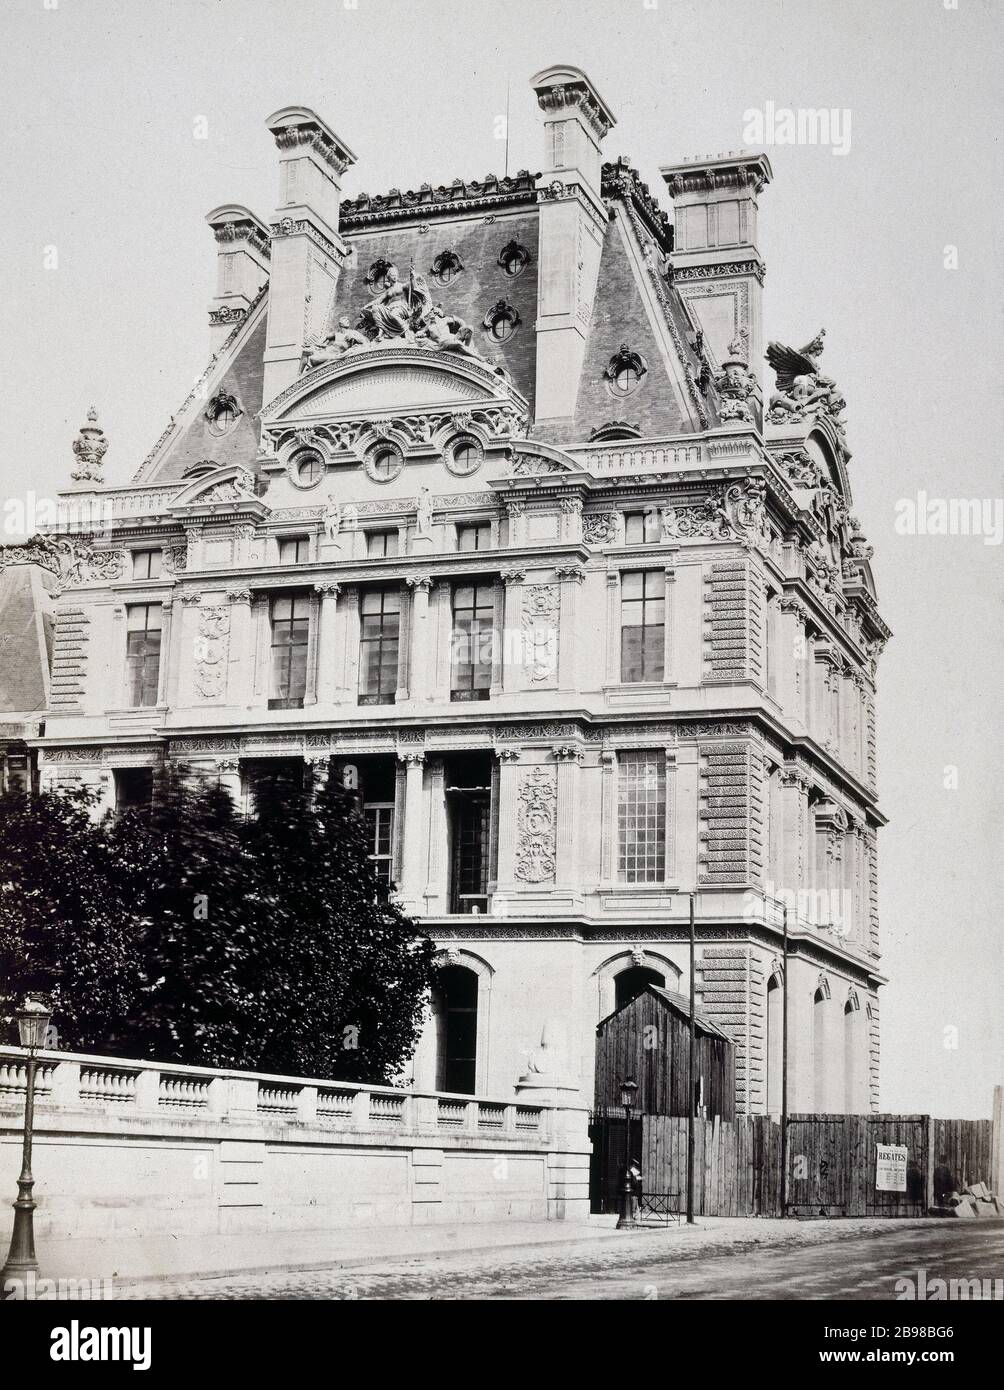 THE TILES - HOUSE FLORA Les Tuileries : Pavillon de Flore. Paris (Ier arr.), 1868. Photographie d'Achille Quinet. Paris, musée Carnavalet. Stock Photo